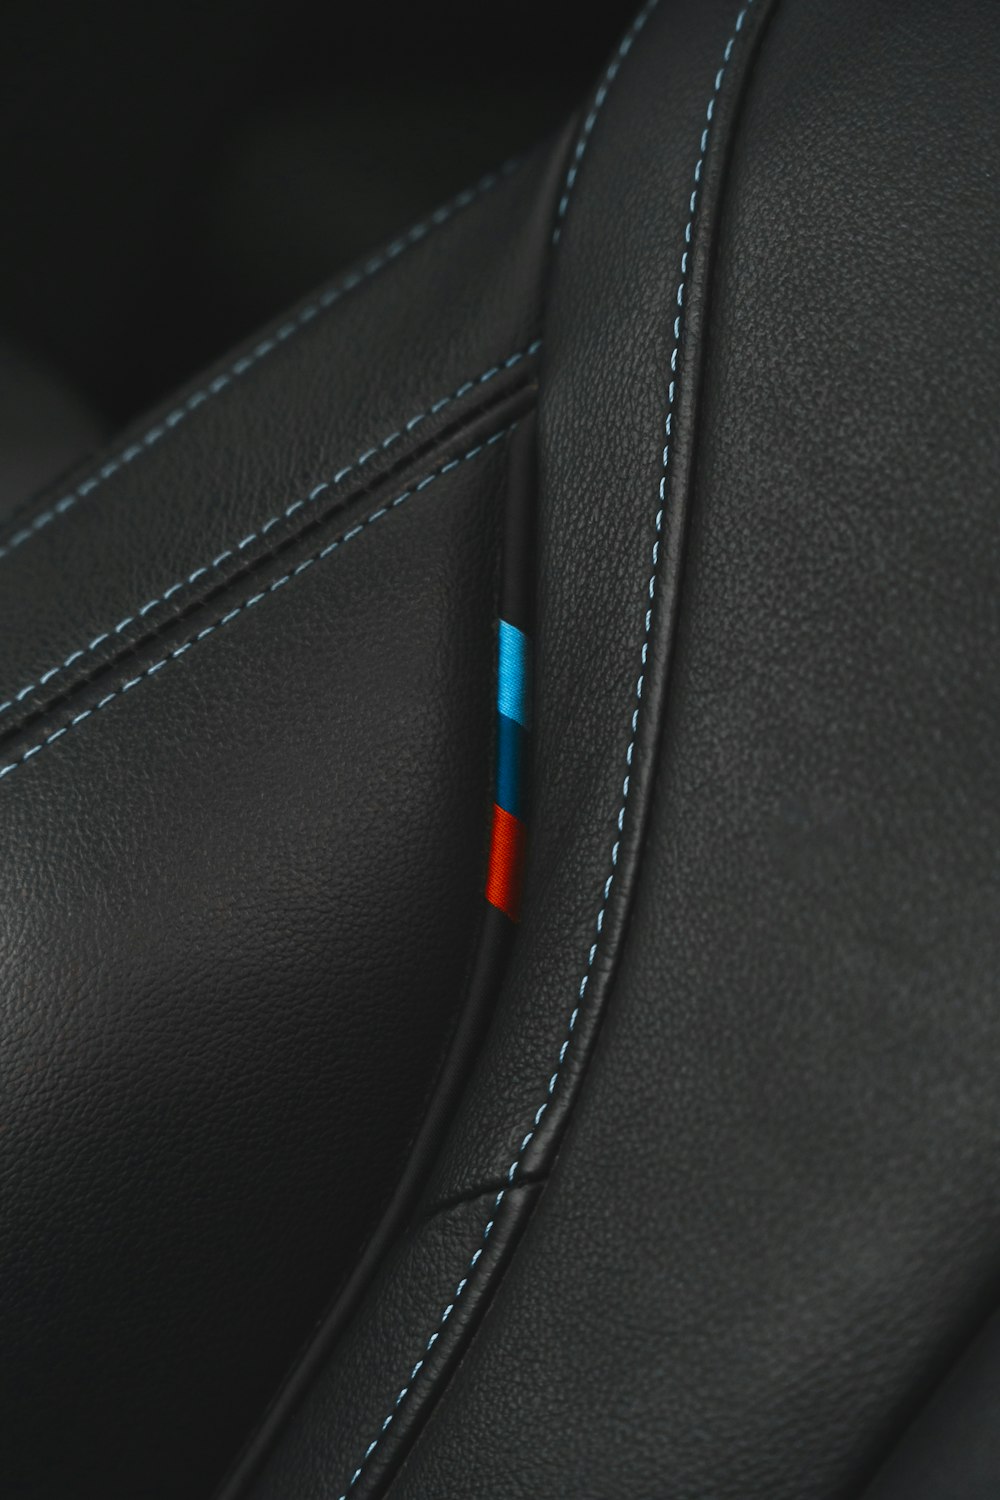 赤と青のステッチが入った黒い革張りのシートのクローズアップ